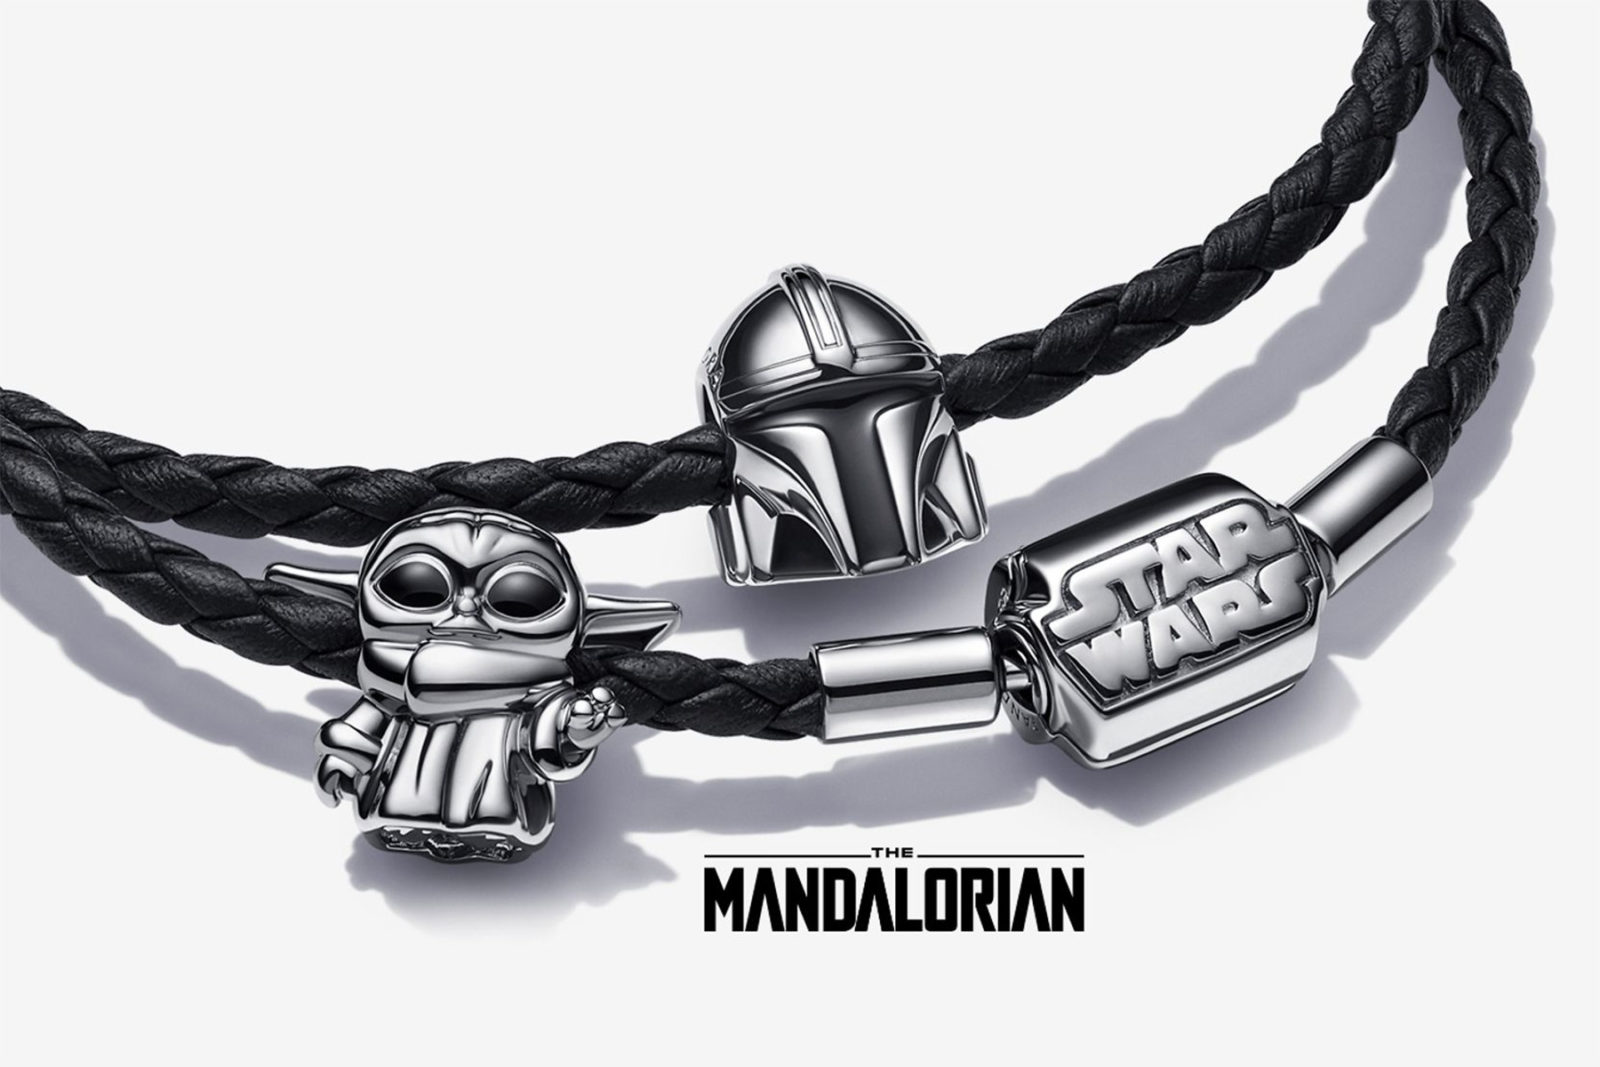 Pandora x Star Wars - Mandalorian Collection